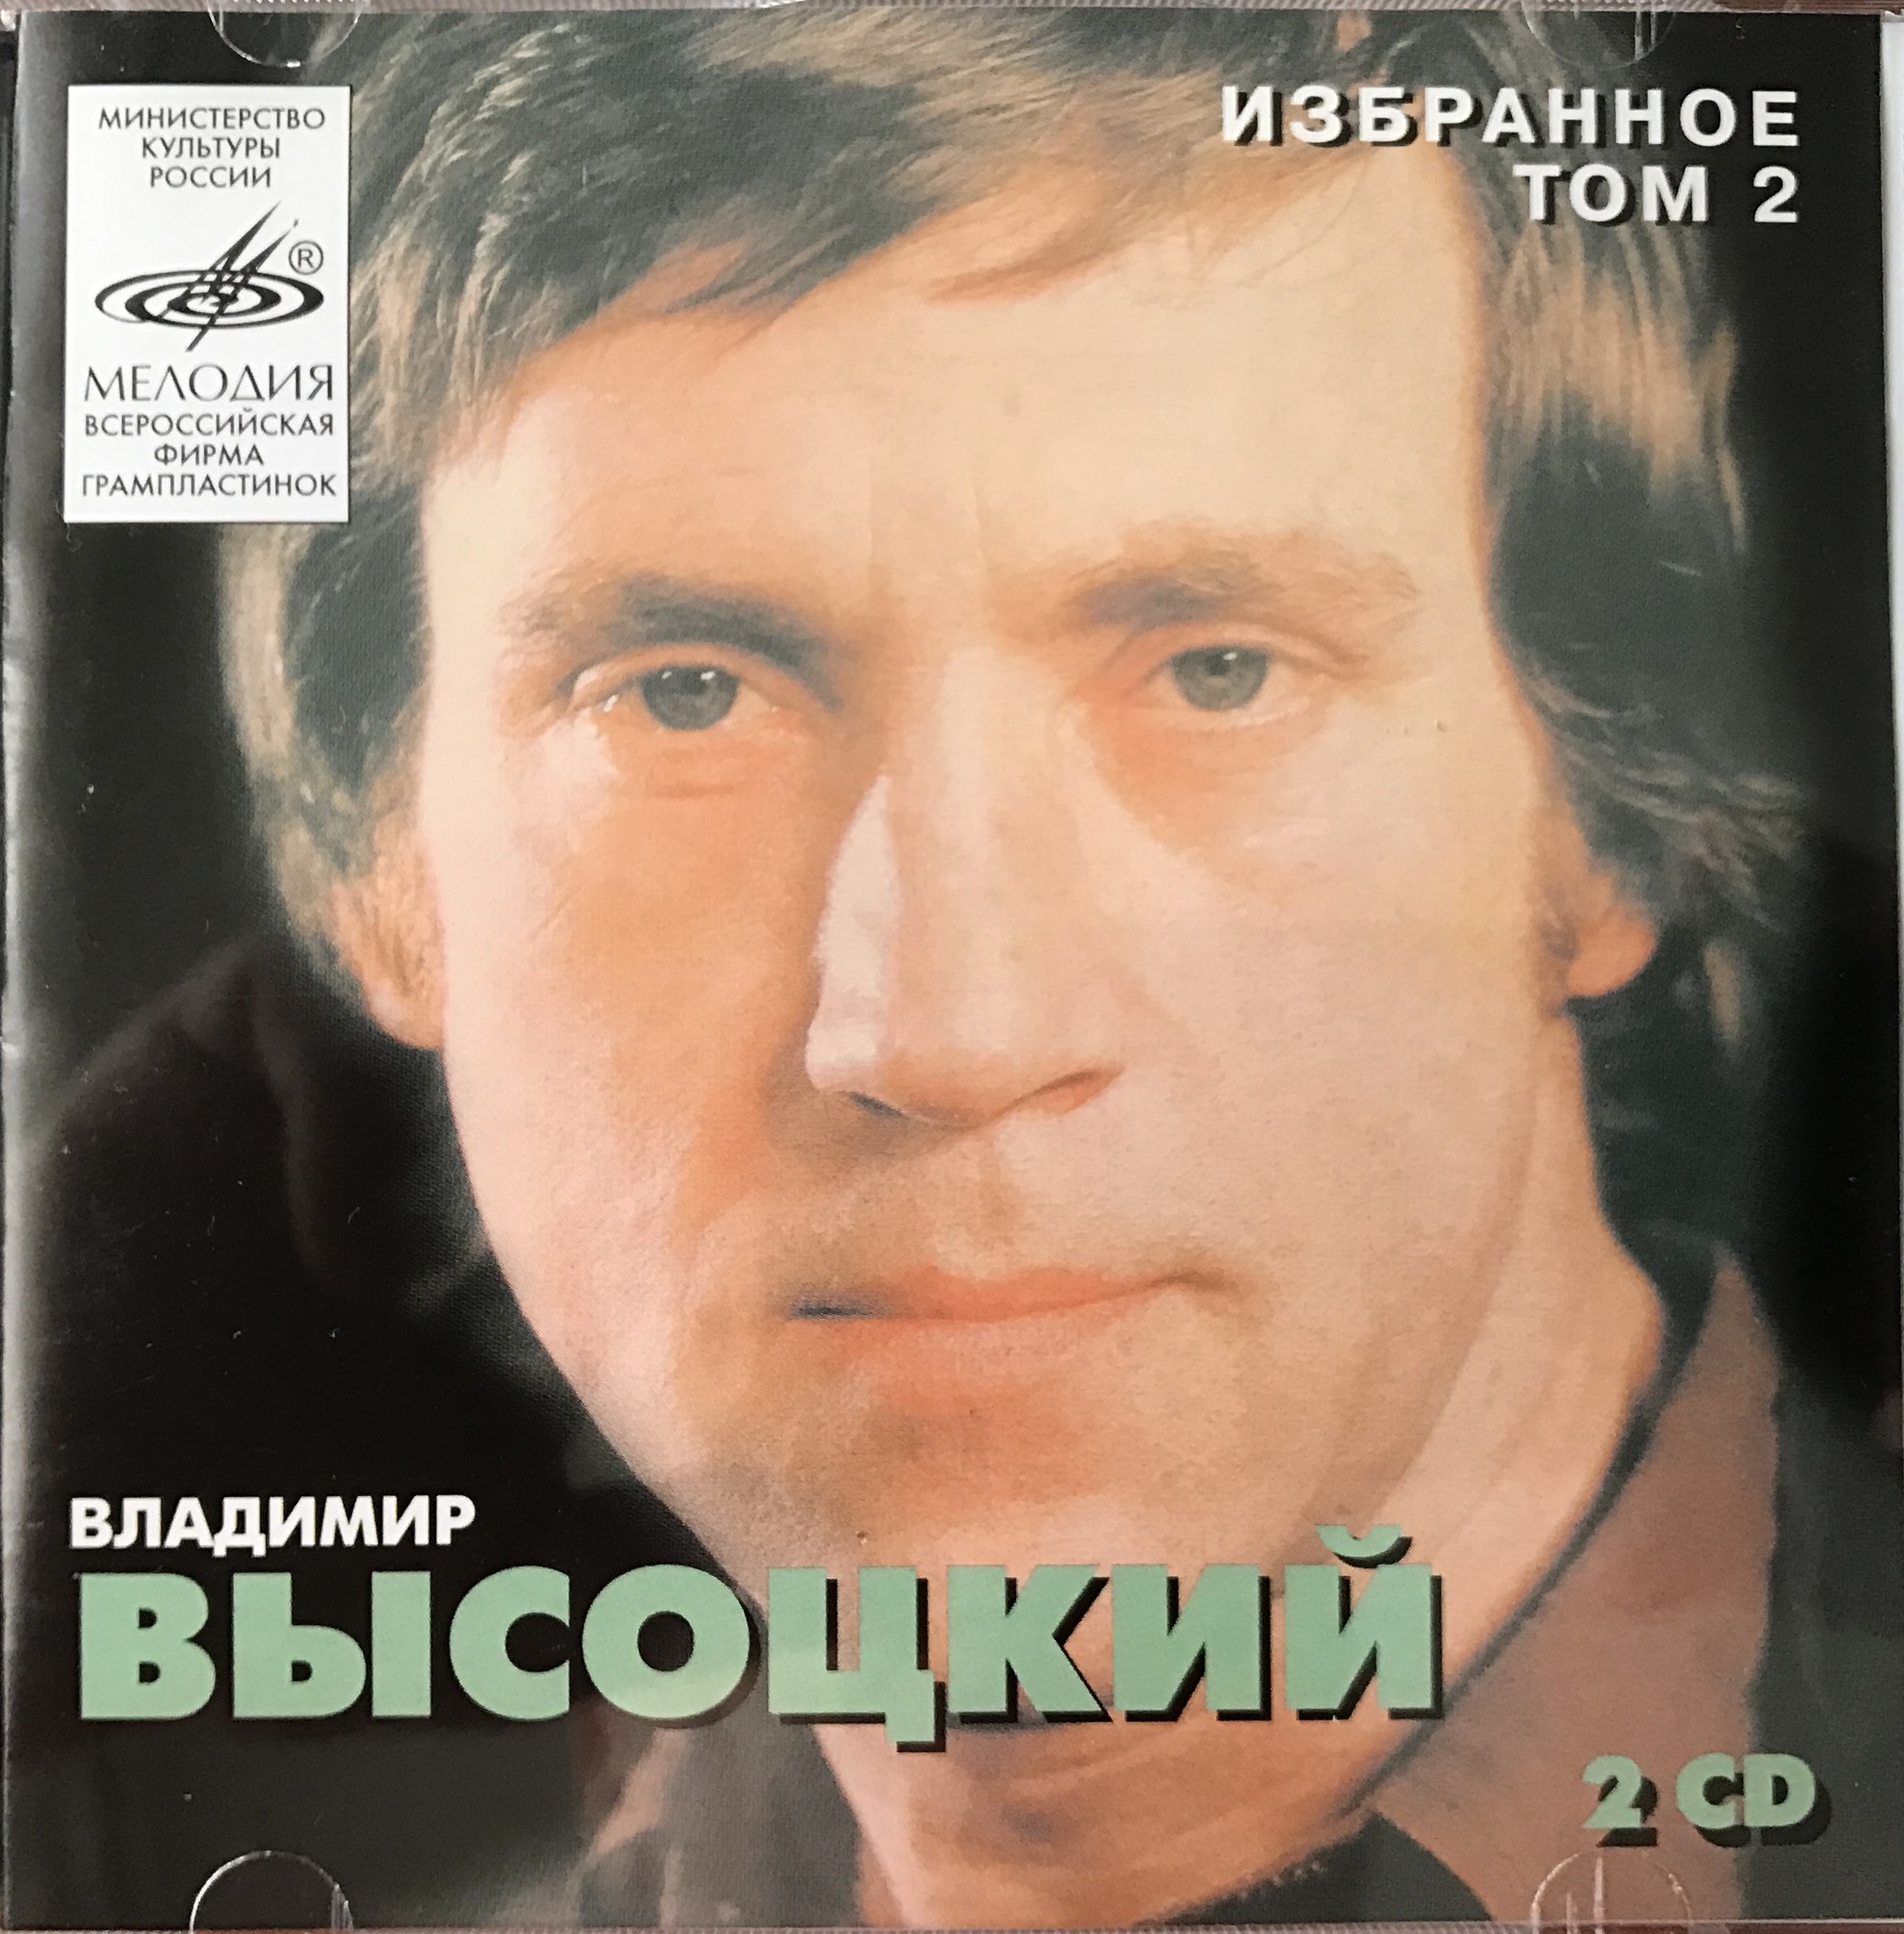 Владимир Высоцкий. Избранное/ Том 2  - 2 CD